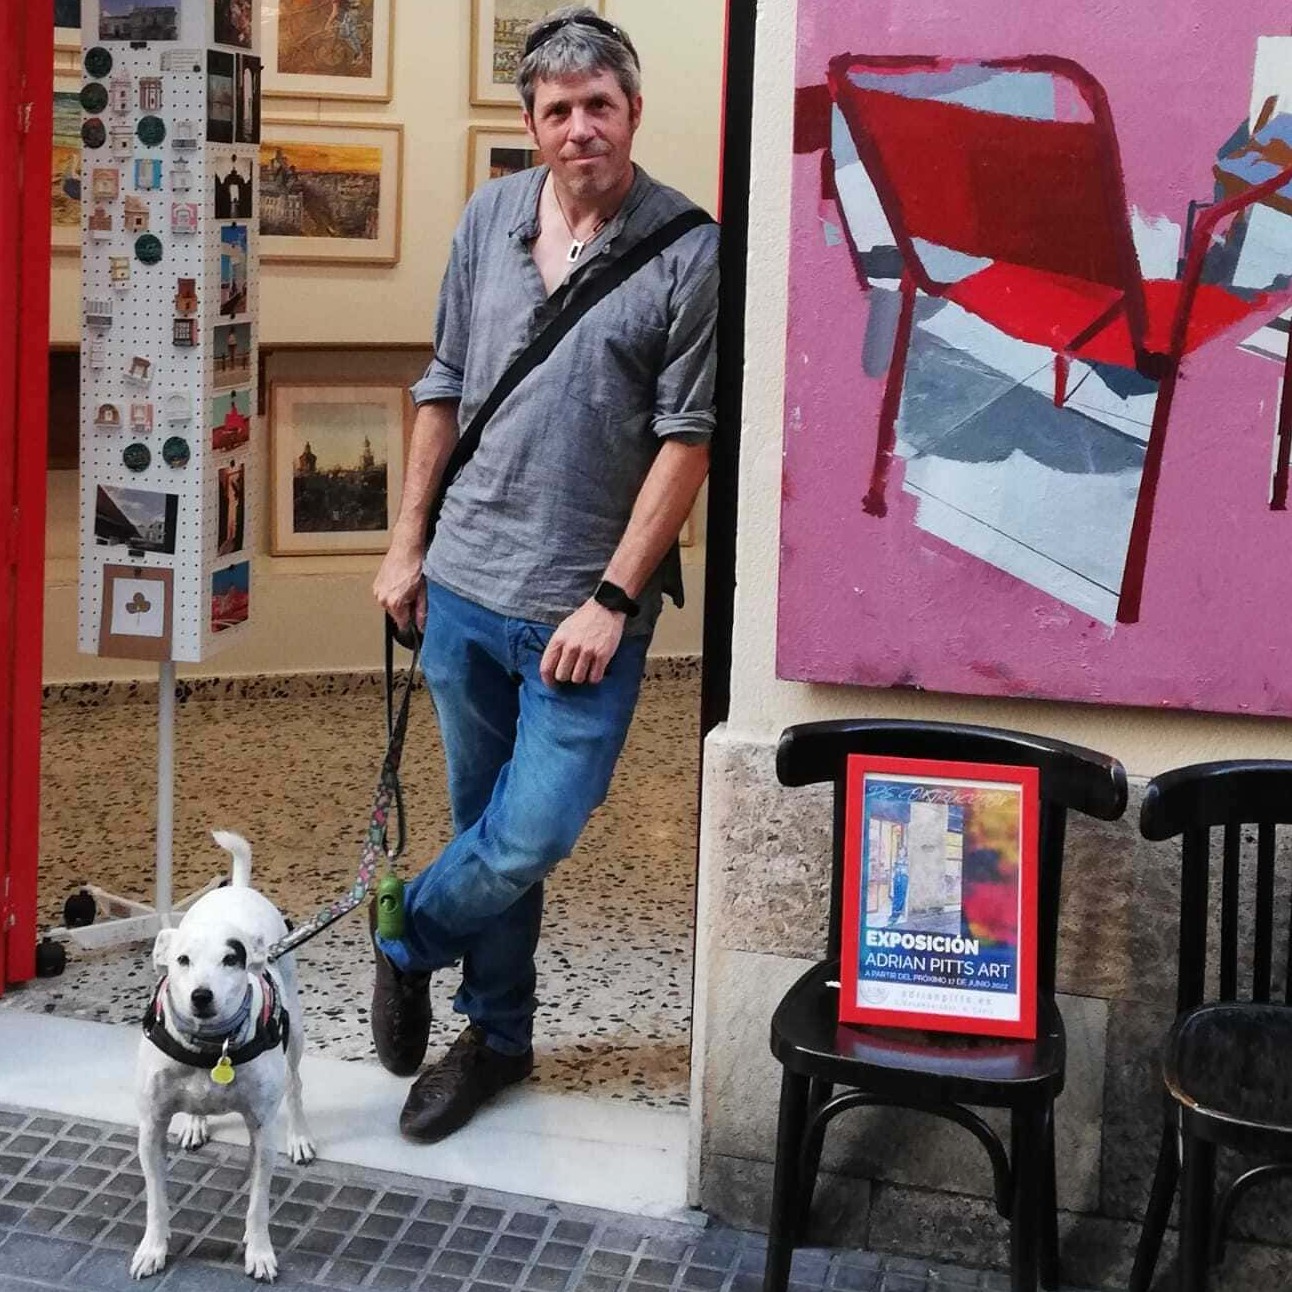 La imagen muestra una fotografía de Adrian Pitts (venta de cuadros particulares) en una galería de arte.